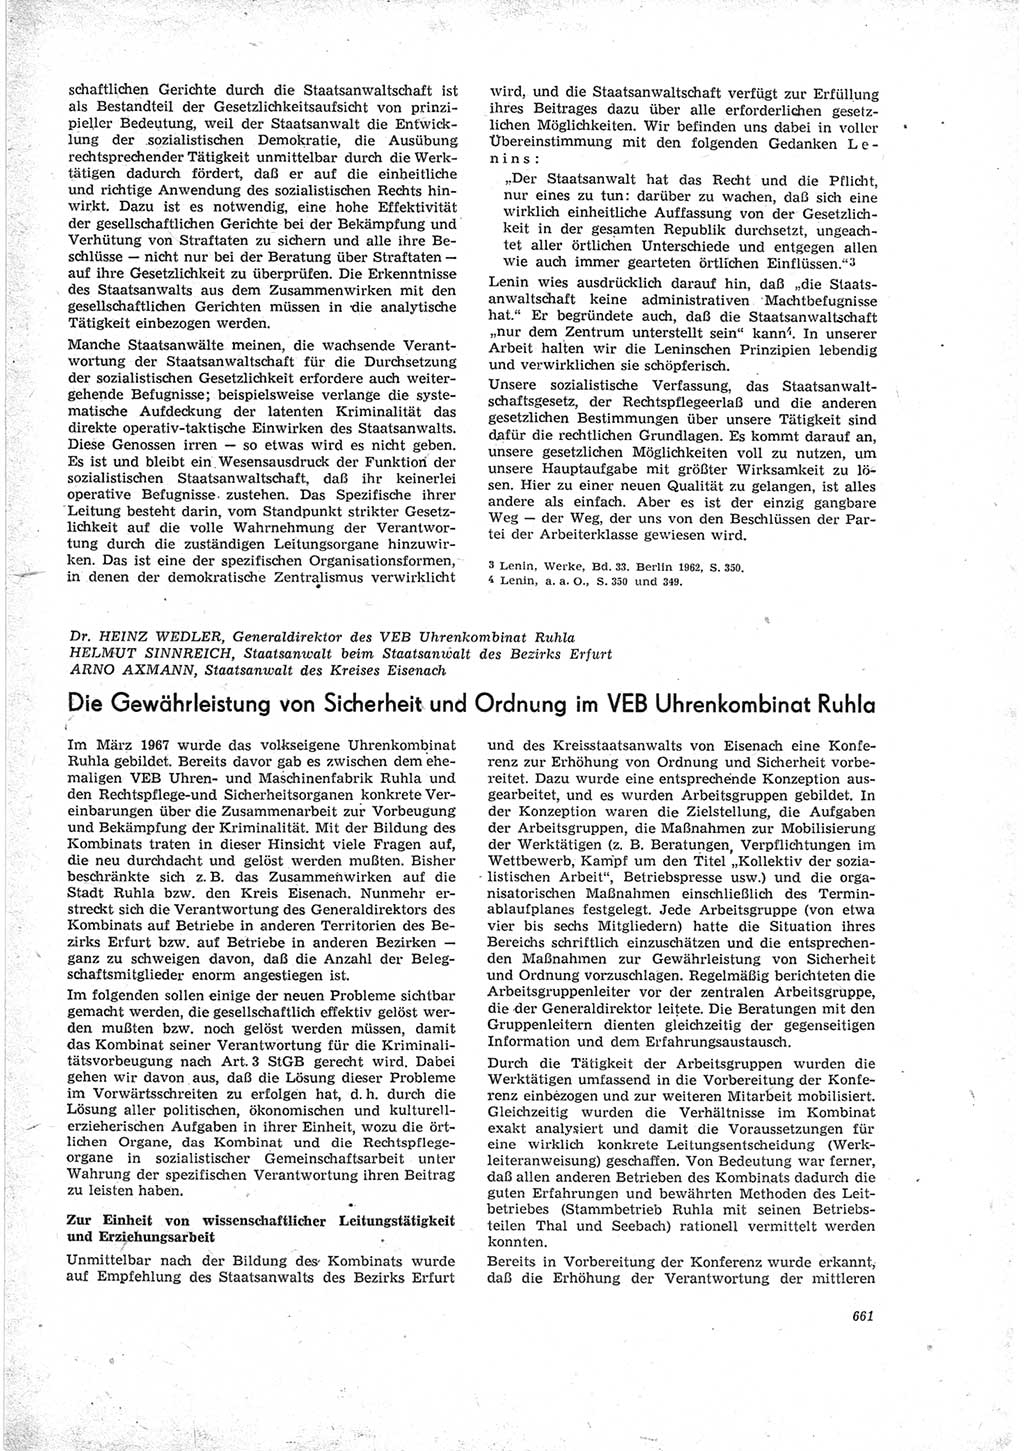 Neue Justiz (NJ), Zeitschrift für Recht und Rechtswissenschaft [Deutsche Demokratische Republik (DDR)], 23. Jahrgang 1969, Seite 661 (NJ DDR 1969, S. 661)